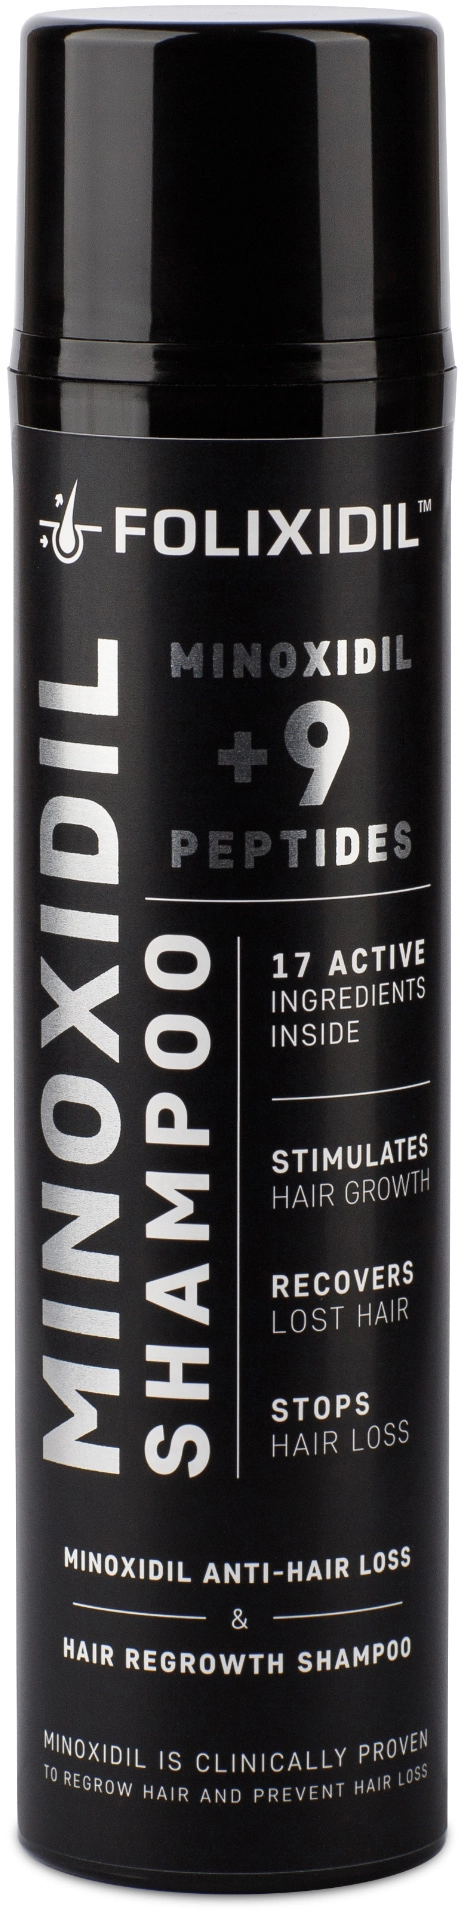 Шампунь против выпадения волос с миноксидилом и пептидами - FOLIXIDIL Shampoo Minoxidil + 9 Peptides, 150 мл - фото N1